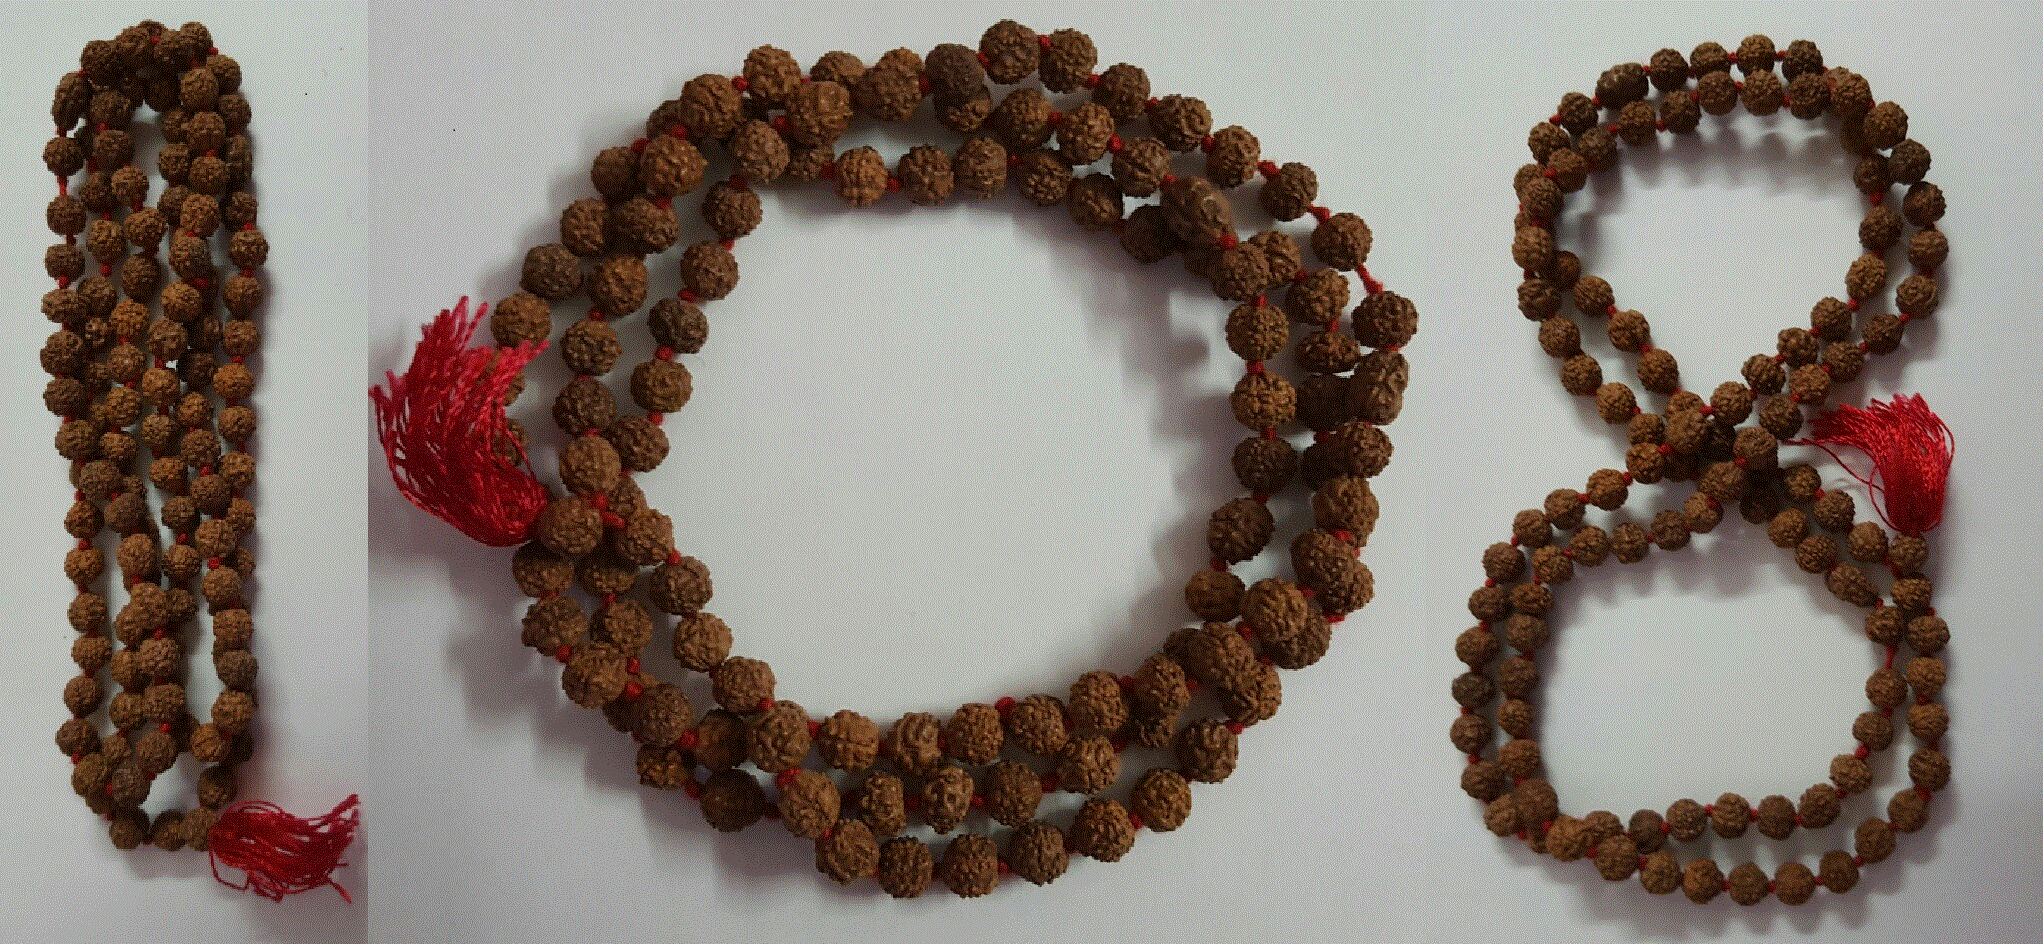 108 beads/stones 